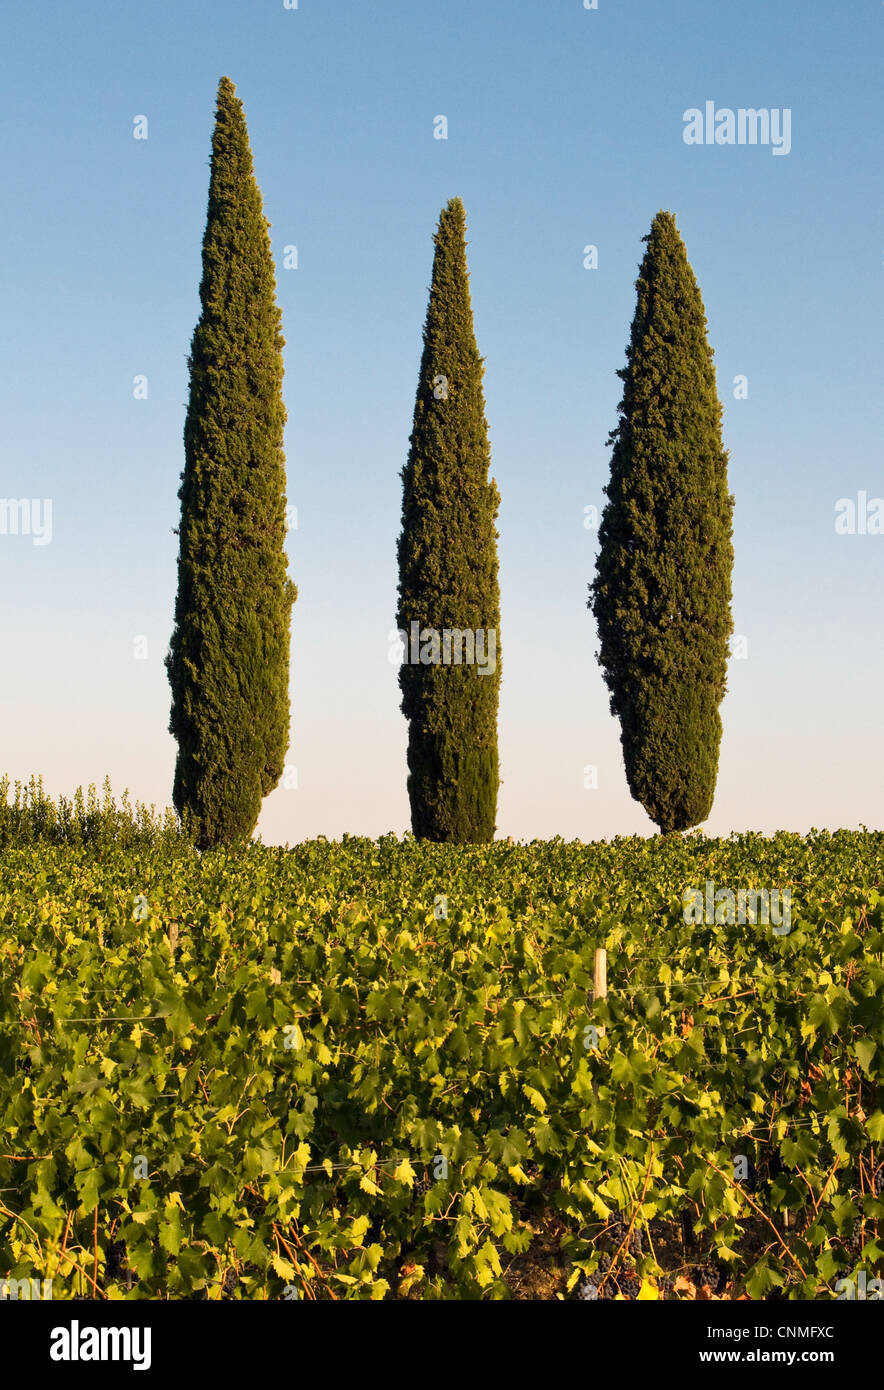 Paysage avec trois plats typiquement méditerranéens de cyprès (Cupressus sempervirens ou Crayon pin), la Toscane (Toscana, Italie) Banque D'Images